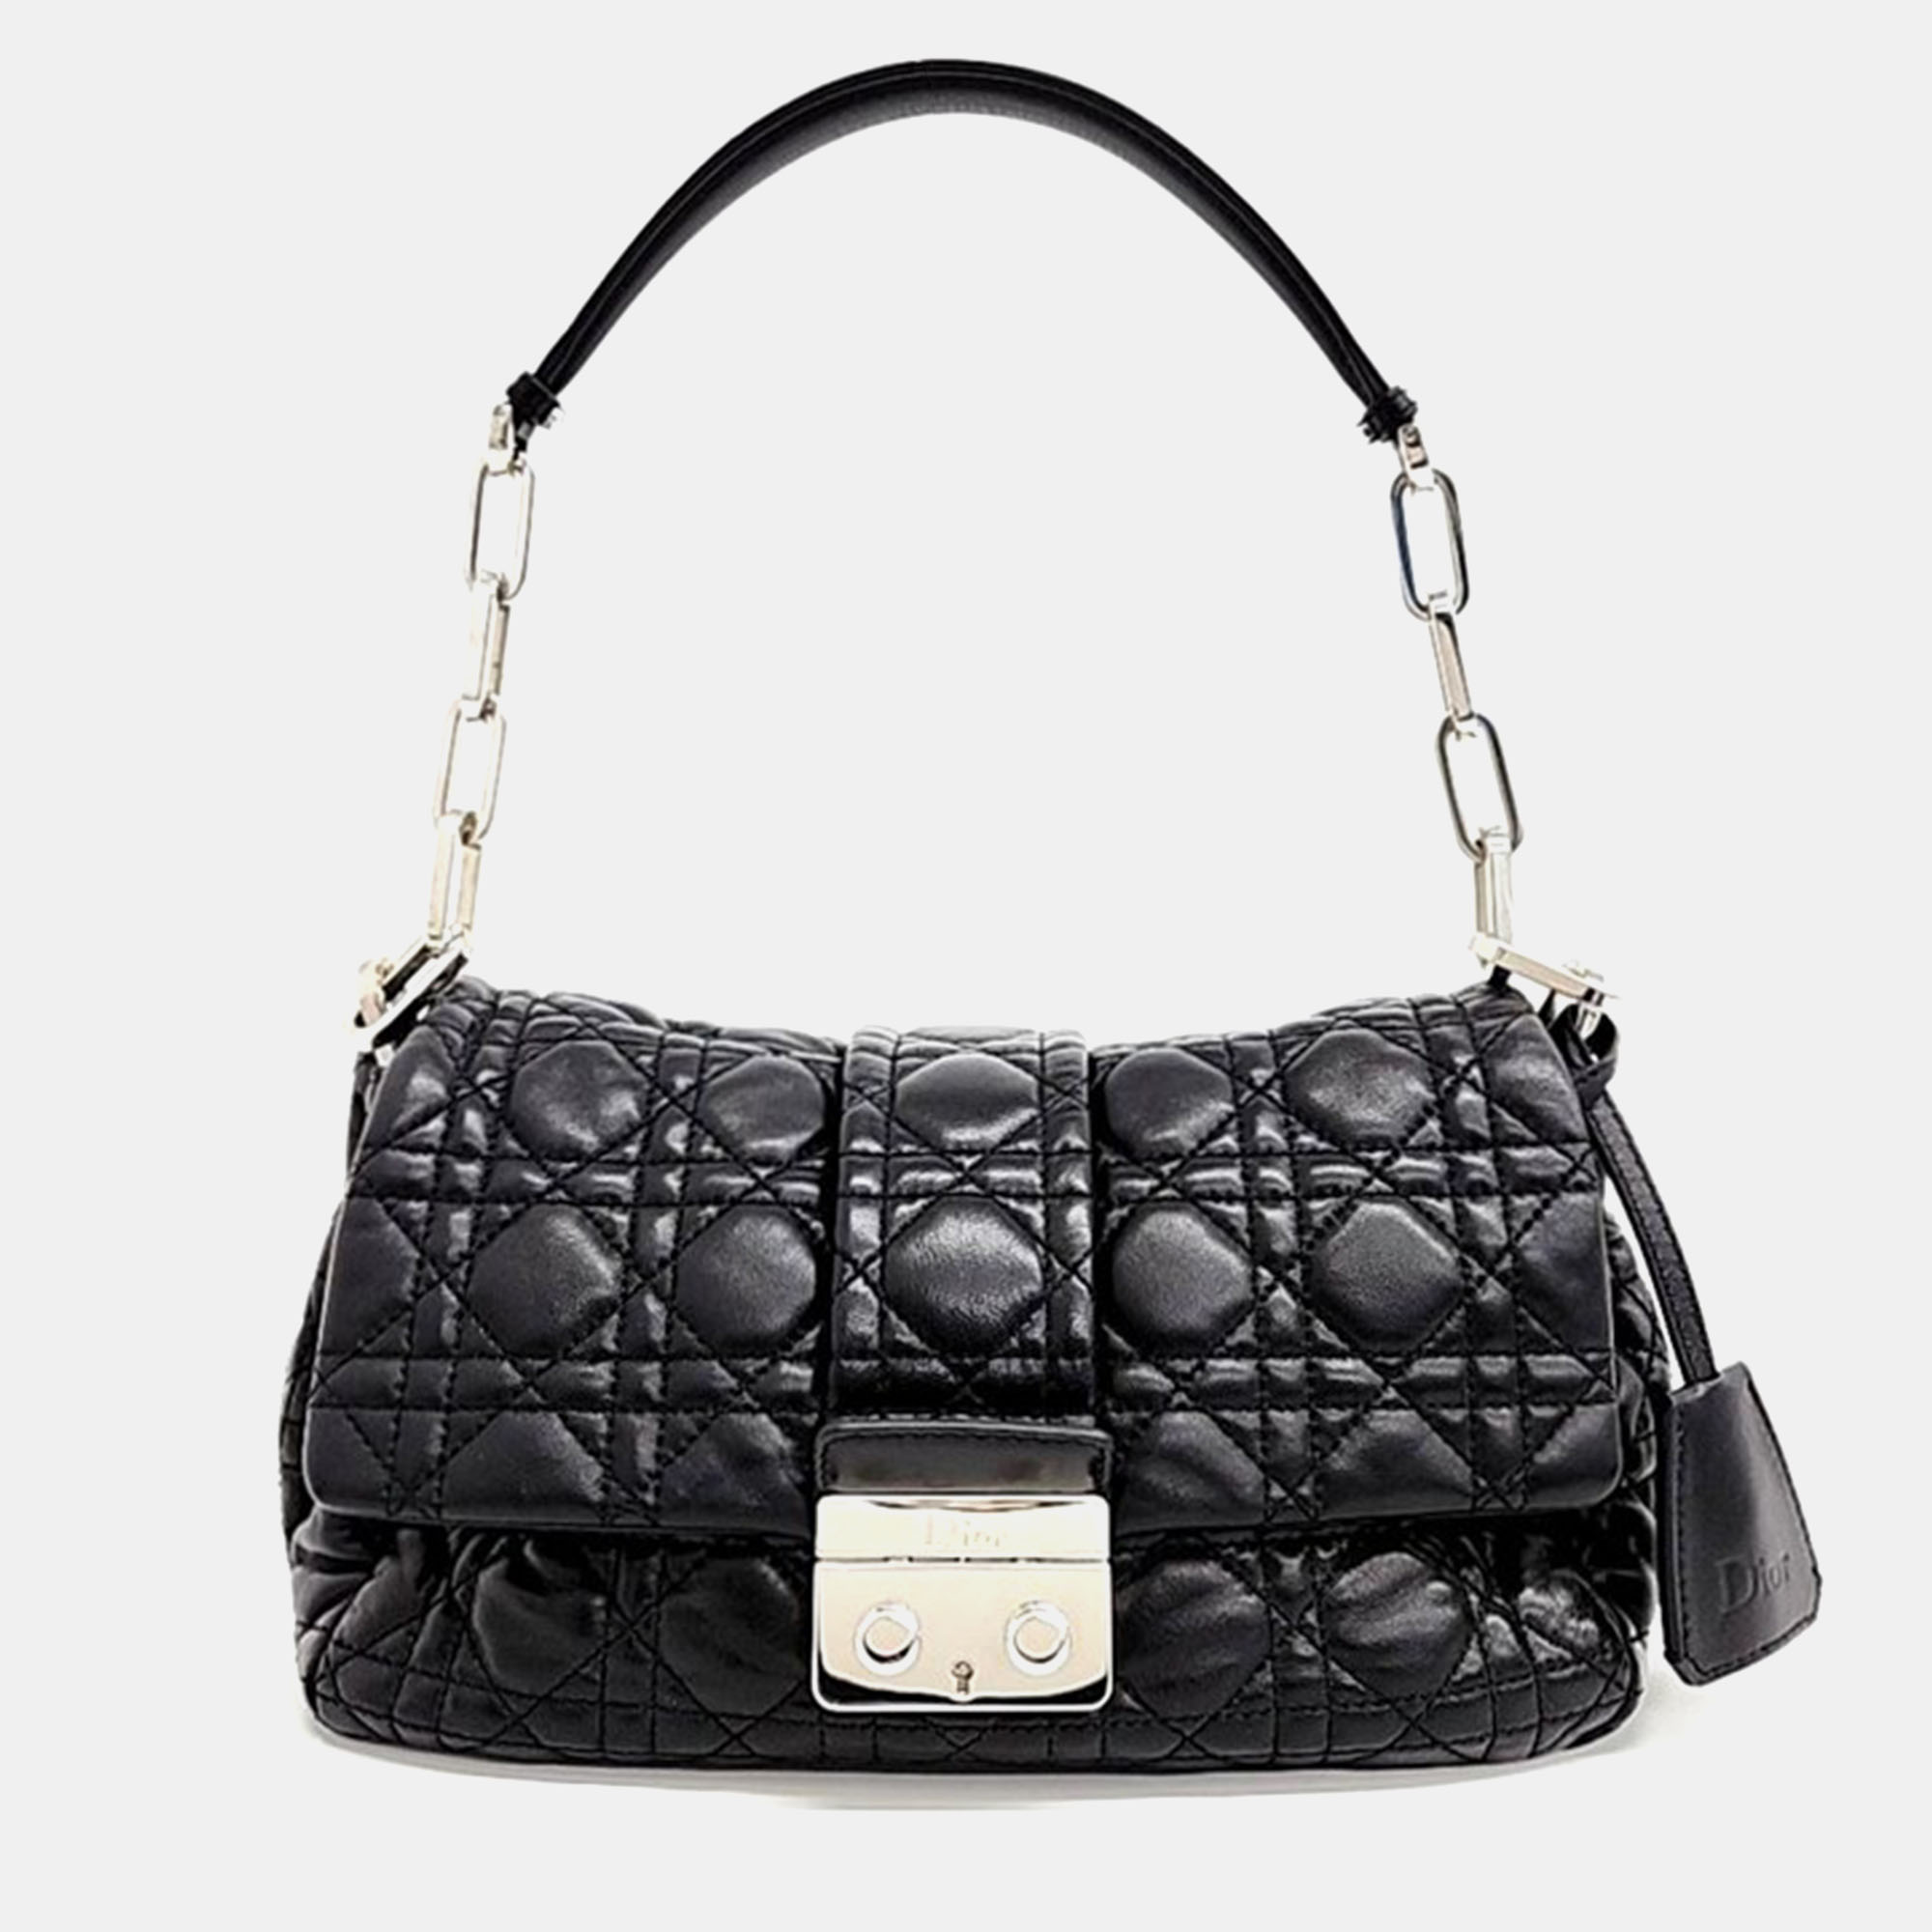 Dior black leather cannage new look shoulder bag